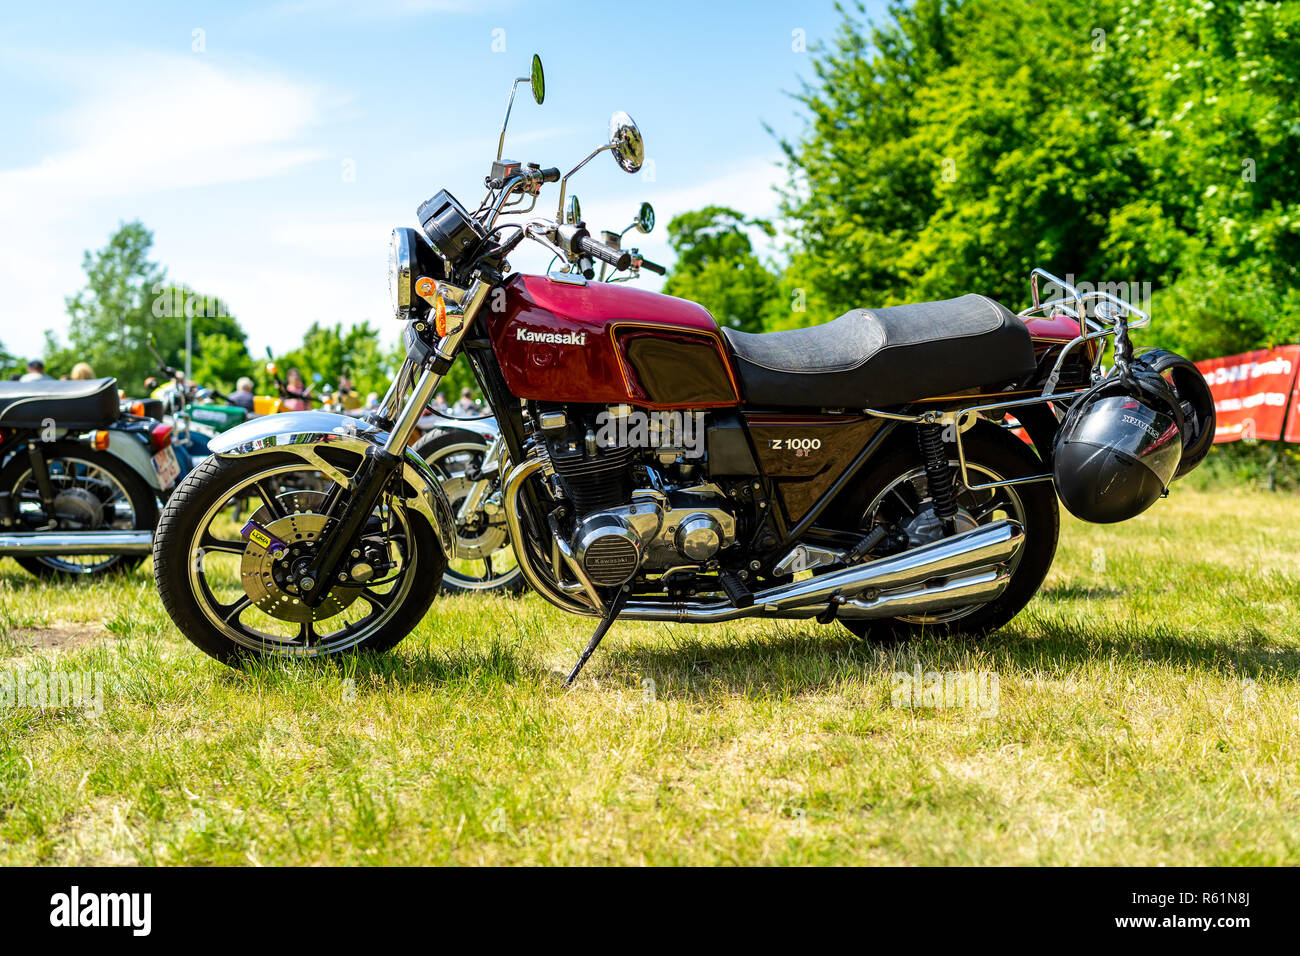 PAAREN IM GLIEN, GERMANY - 19, 2018: Motorcycle Kawasaki Z1000ST, 1980. Die Show Stock Photo - Alamy